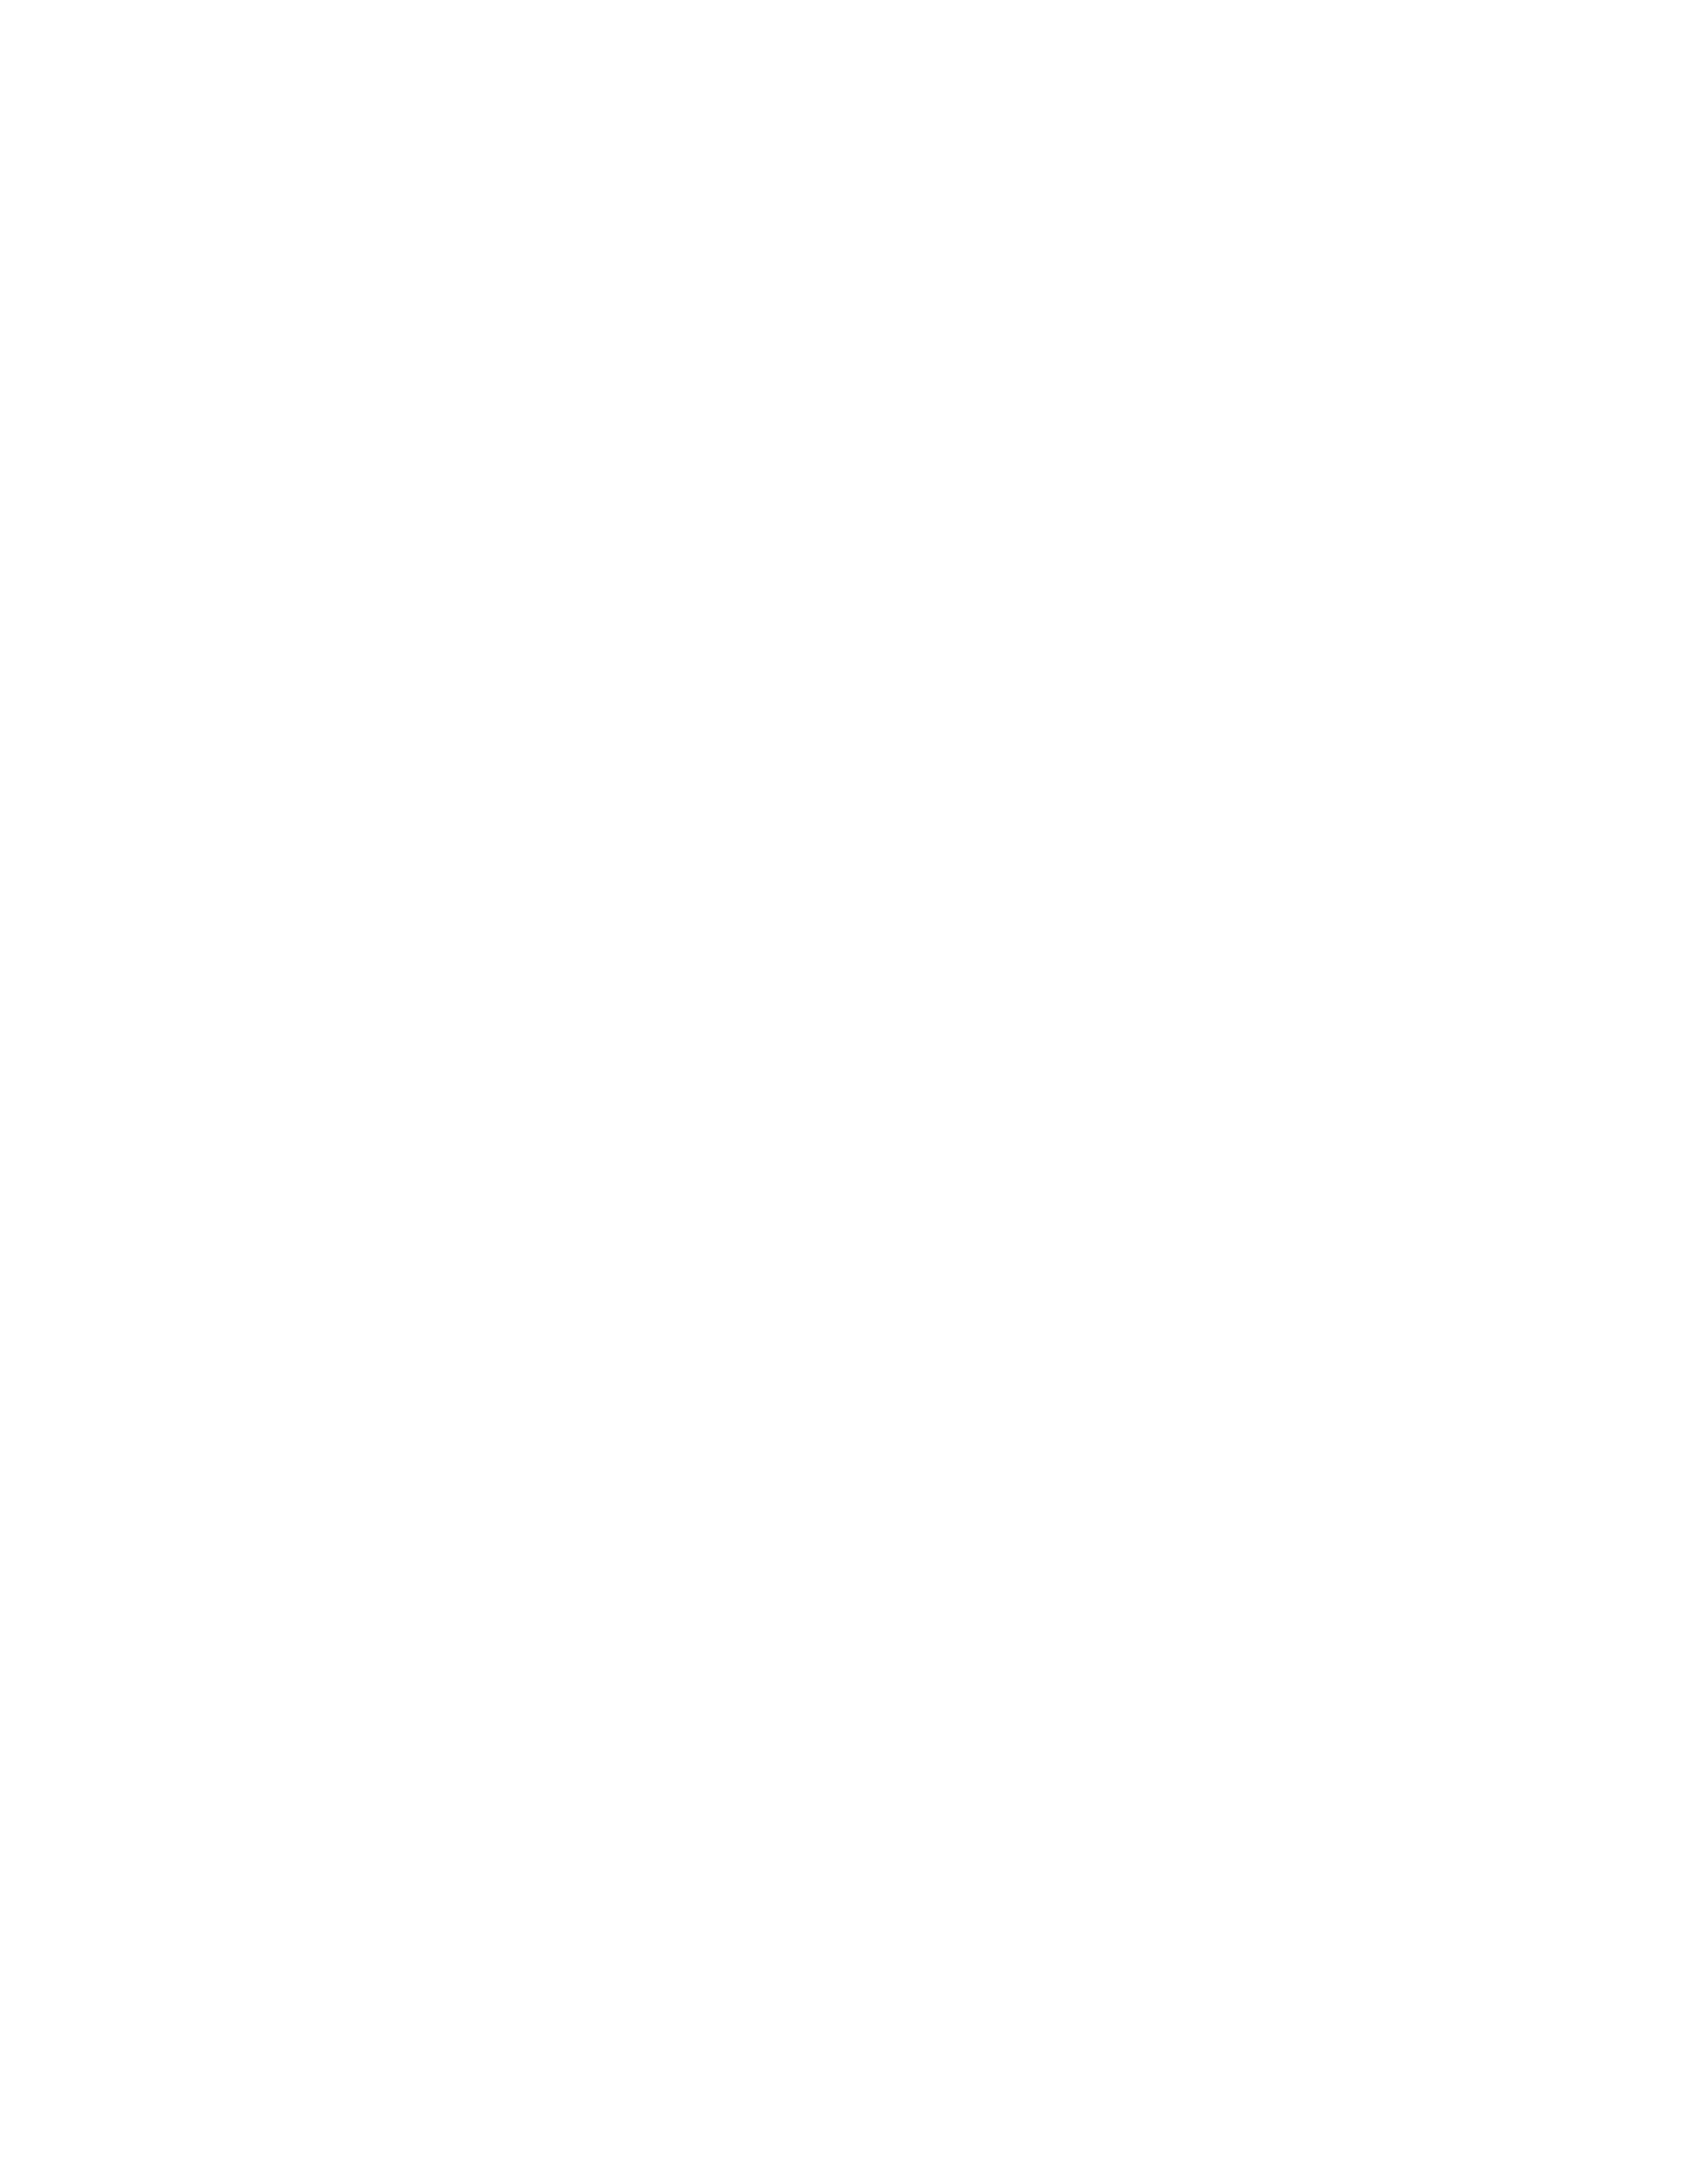 Buysen Football Logo